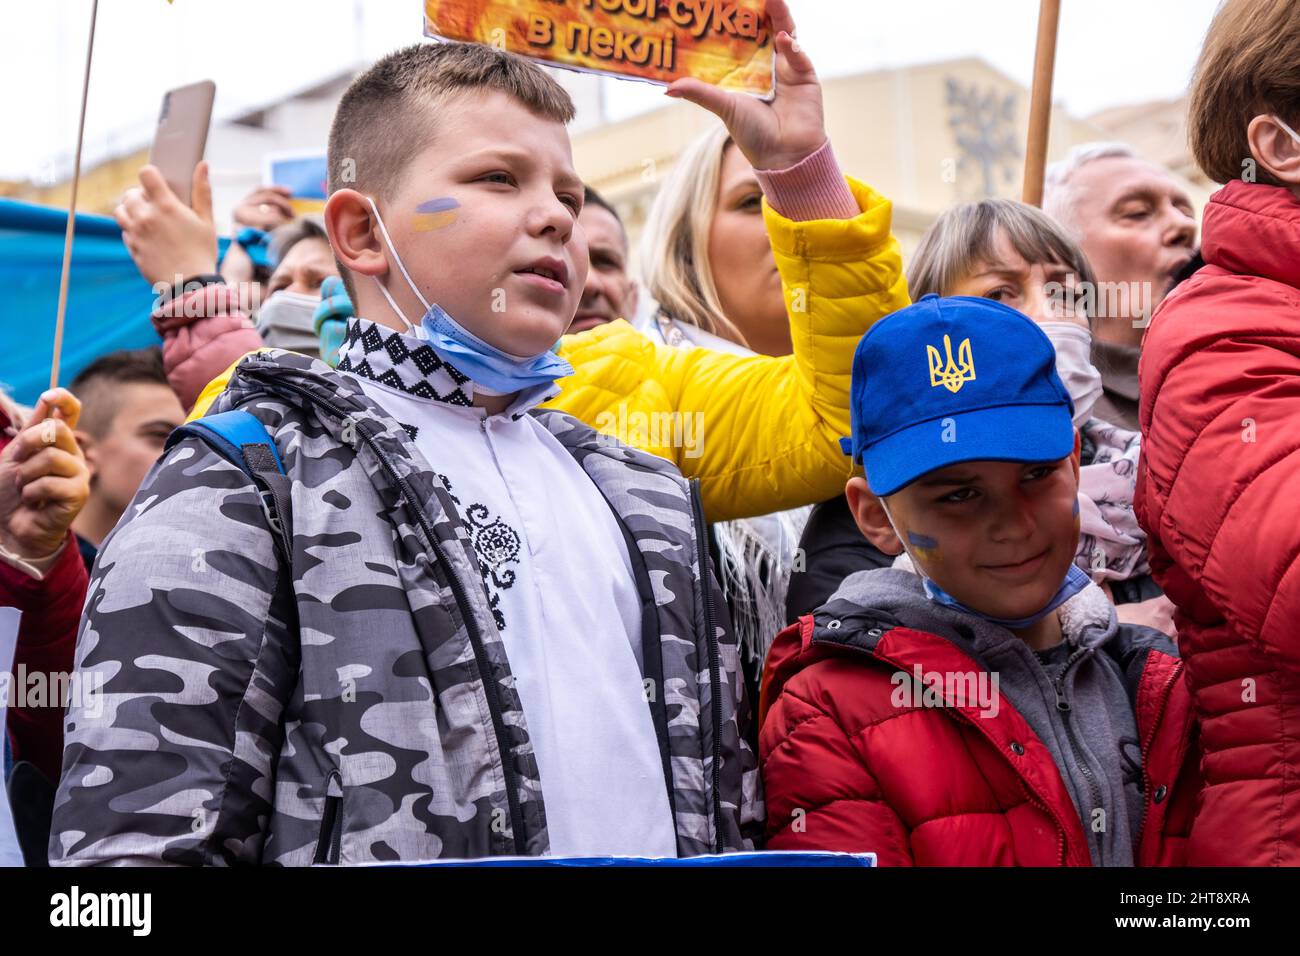 Valencia, Spanien; 27.. Februar 2022: Demonstranten protestieren während einer Demonstration gegen die russische Invasion in der Ukraine gegen den Krieg. Einige Kinder waren ebenfalls anwesend. Quelle: Media+Media/Alamy Live News Stockfoto